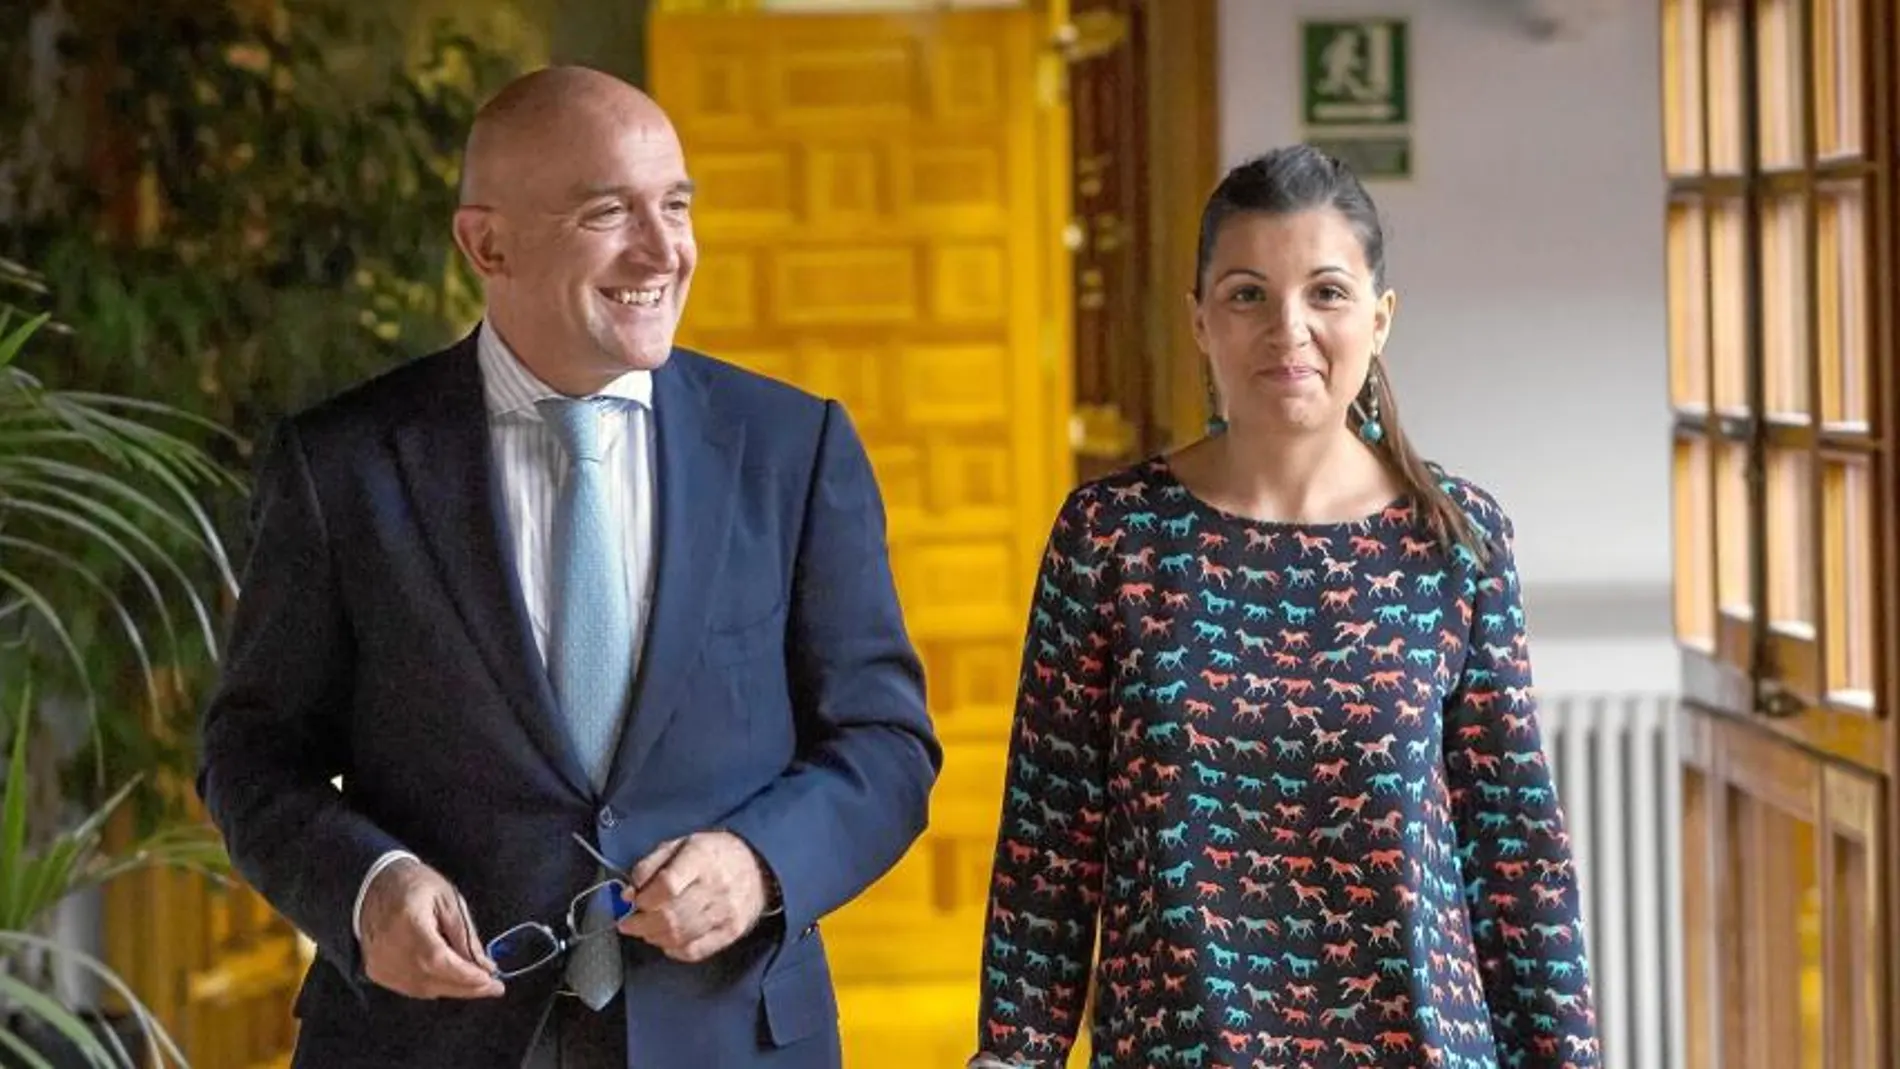 El presidente de la Diputación de Valladolid, Jesús Julio Carnero, y la presidenta de la ATA de Castilla y León, Soraya Mayo, firman un convenio de colaboración